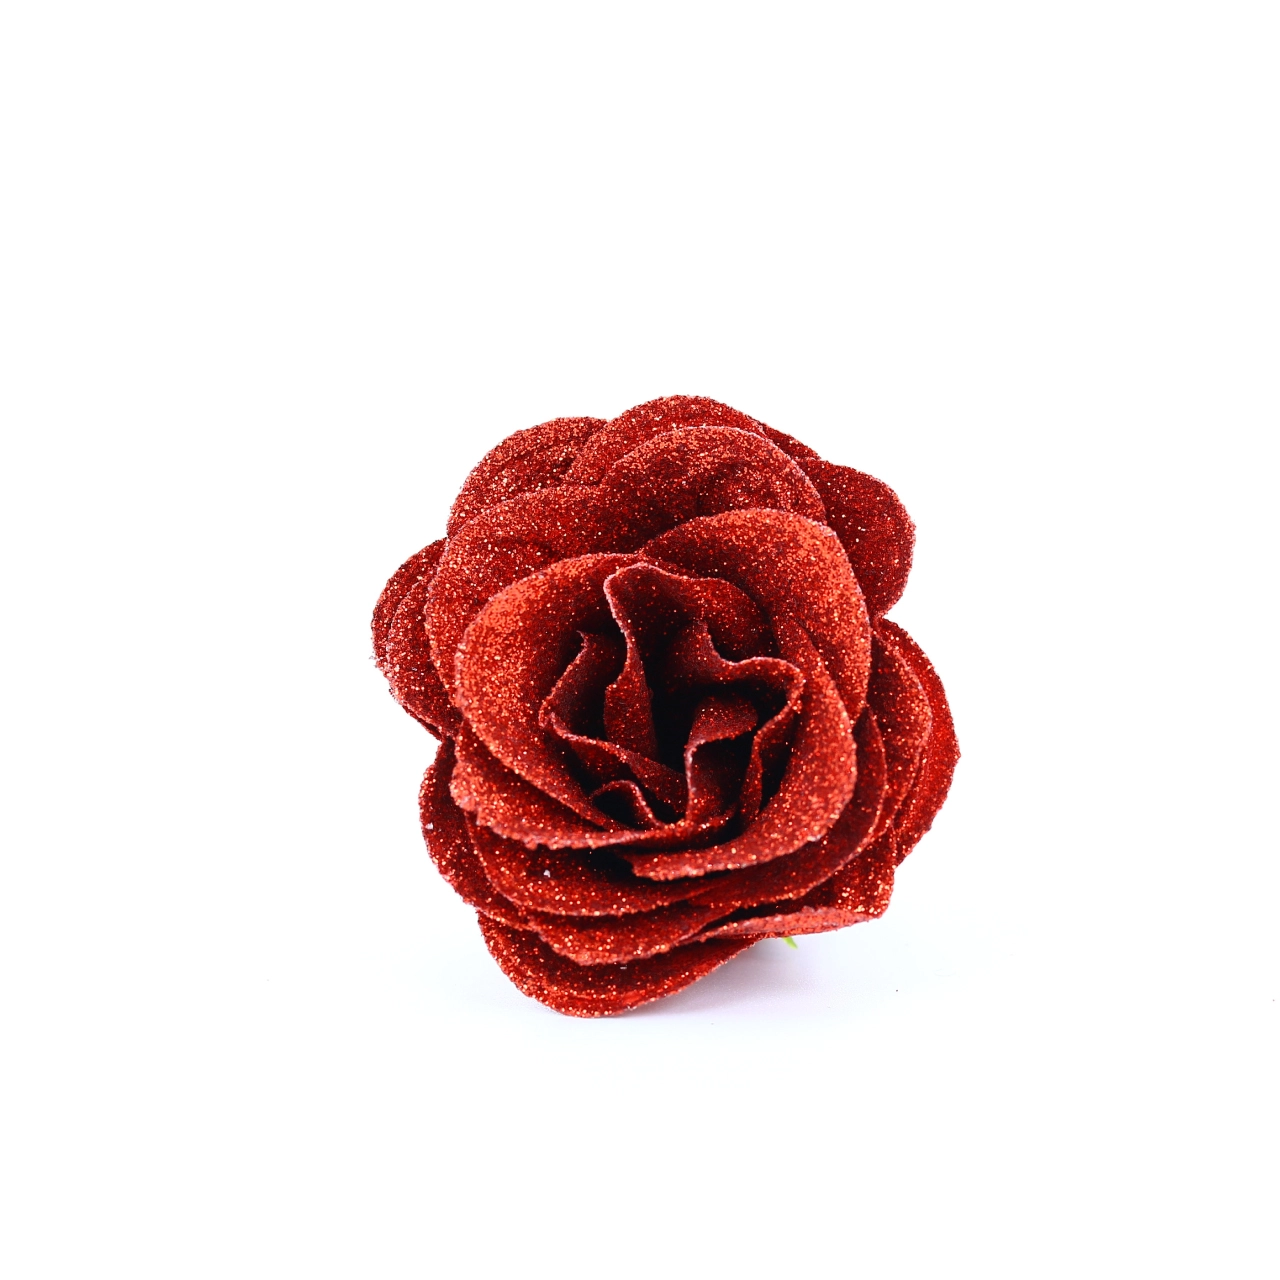 Fleur de savon – Rose paillette rouge – Serto Cosmetiques